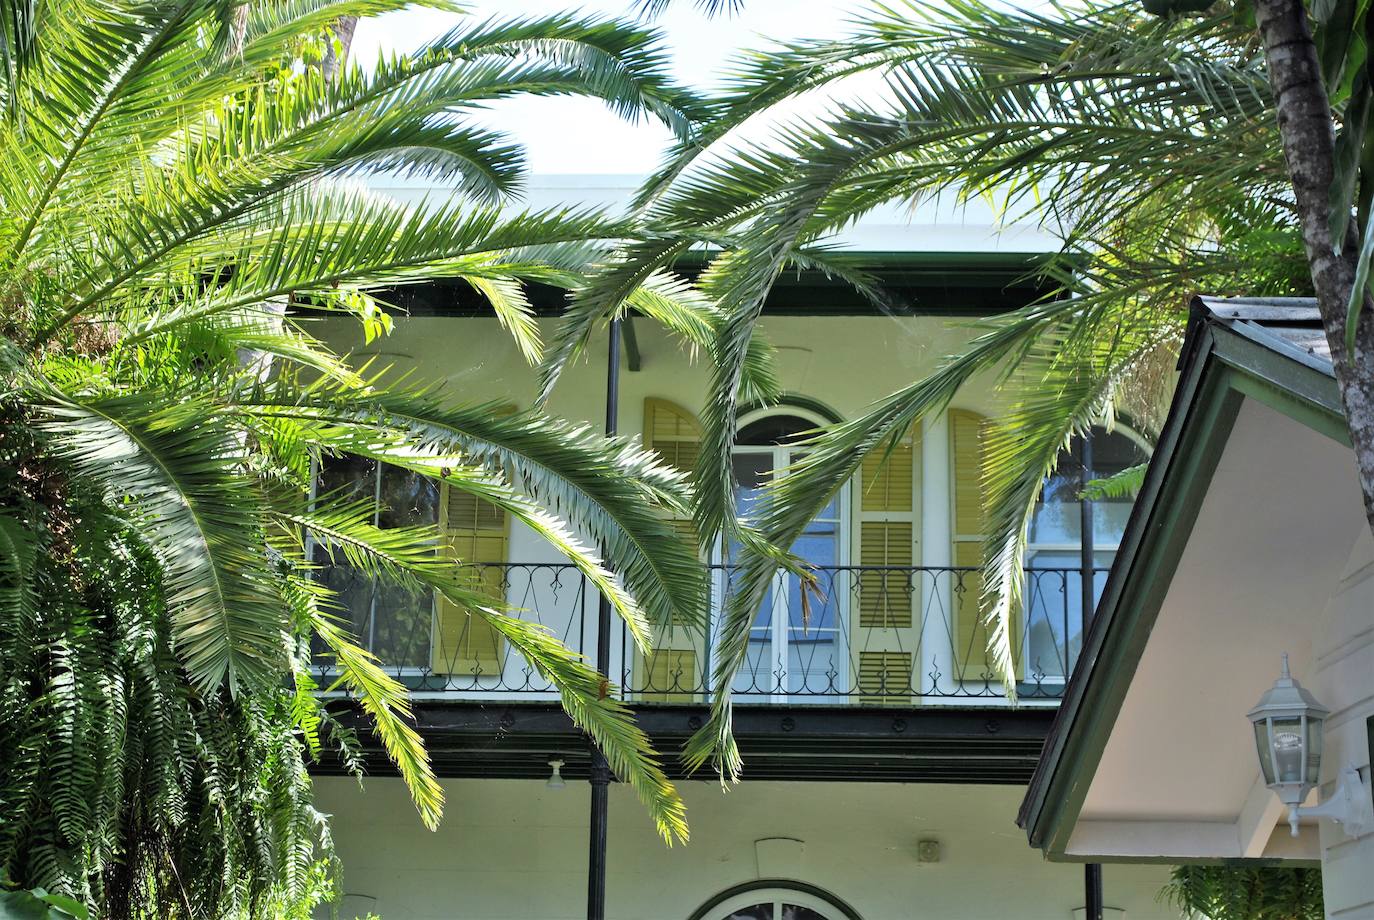 4.- Ernest Hemingway (Key West, Florida) | La casa y el museo de Ernest Hemingway está situada en el 907 de Whitehead Street, en pleno corazón del Old Town Key West. La casa, una de las más antiguas de Key West, está rodeada por bellos jardines y fue construida en 1851 por Asa Tift un arquitecto y el capitán de un barco, y se convirtió en el hogar de Ernest Hemingway en 1931.